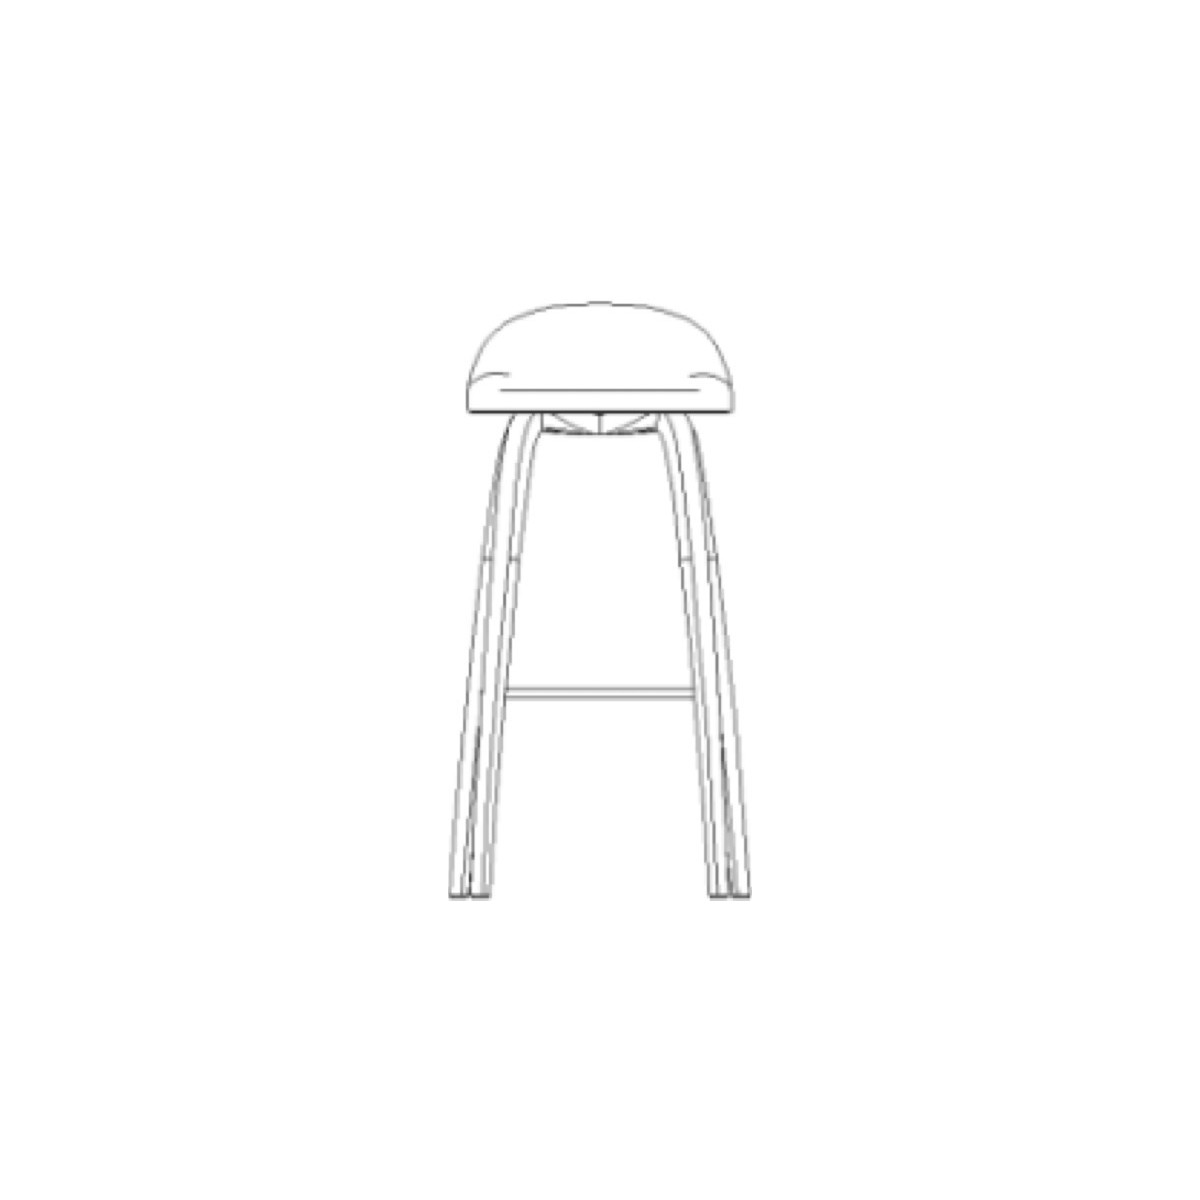 fully upholstered - wooden legs - 3D stool